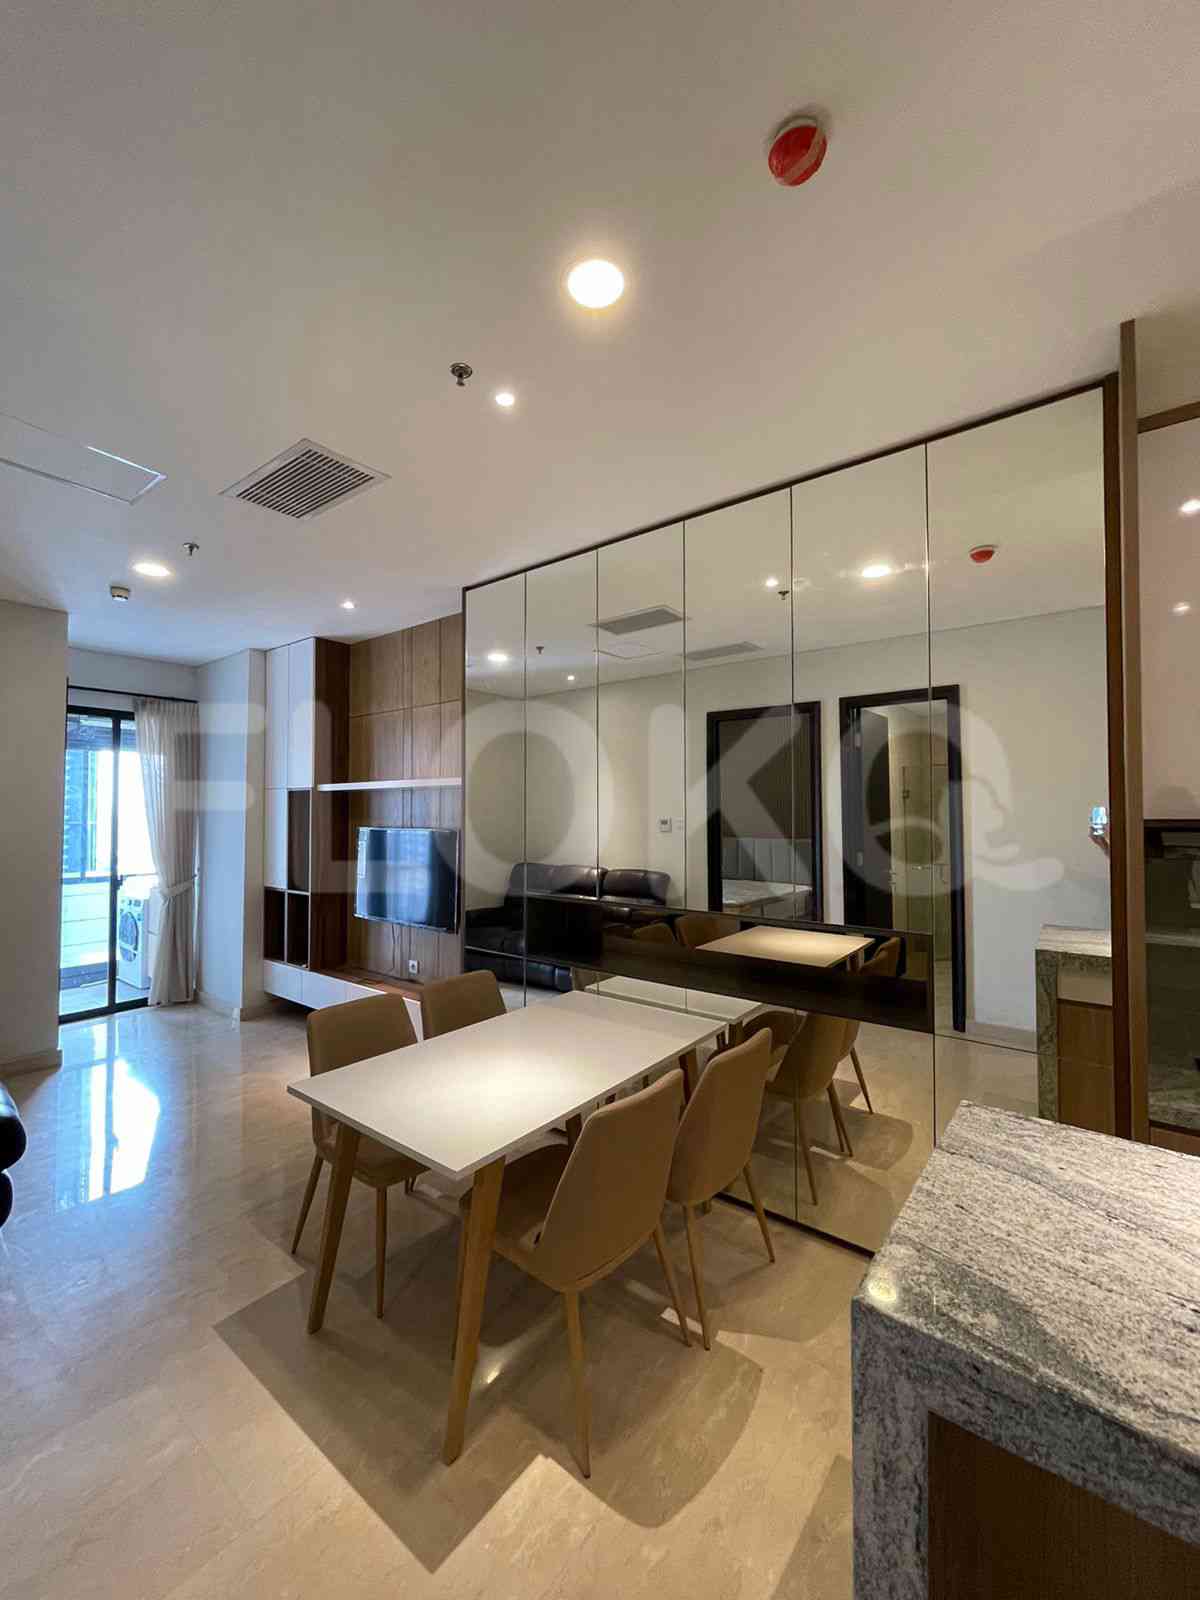 3 Bedroom on 10th Floor for Rent in Sudirman Suites Jakarta - fsuaf7 4